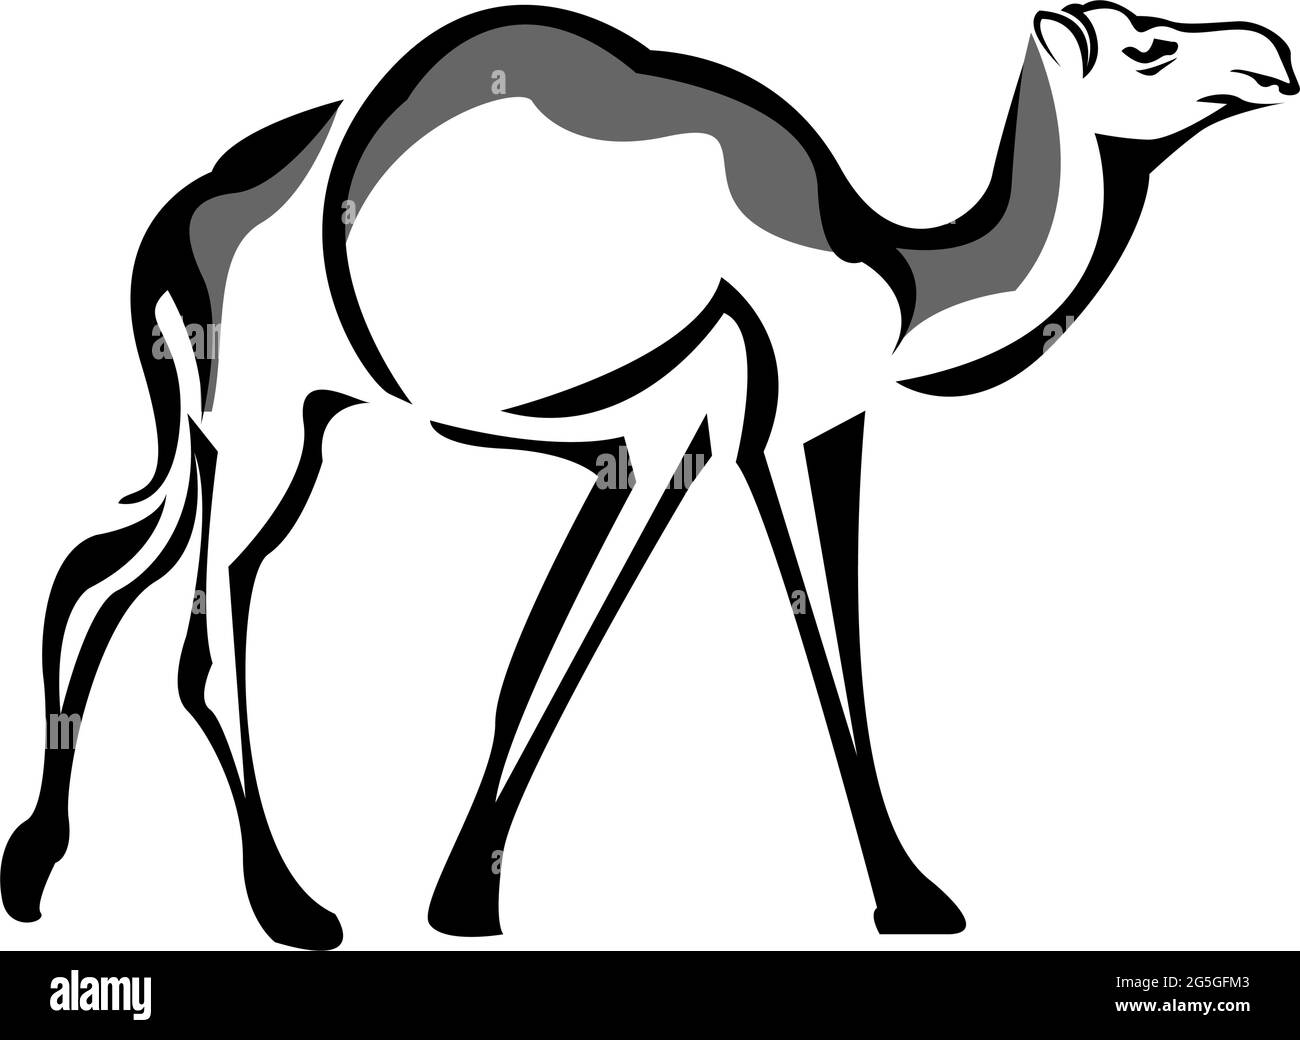 Camel icon stock, flat design. Camel logo Stock Vector